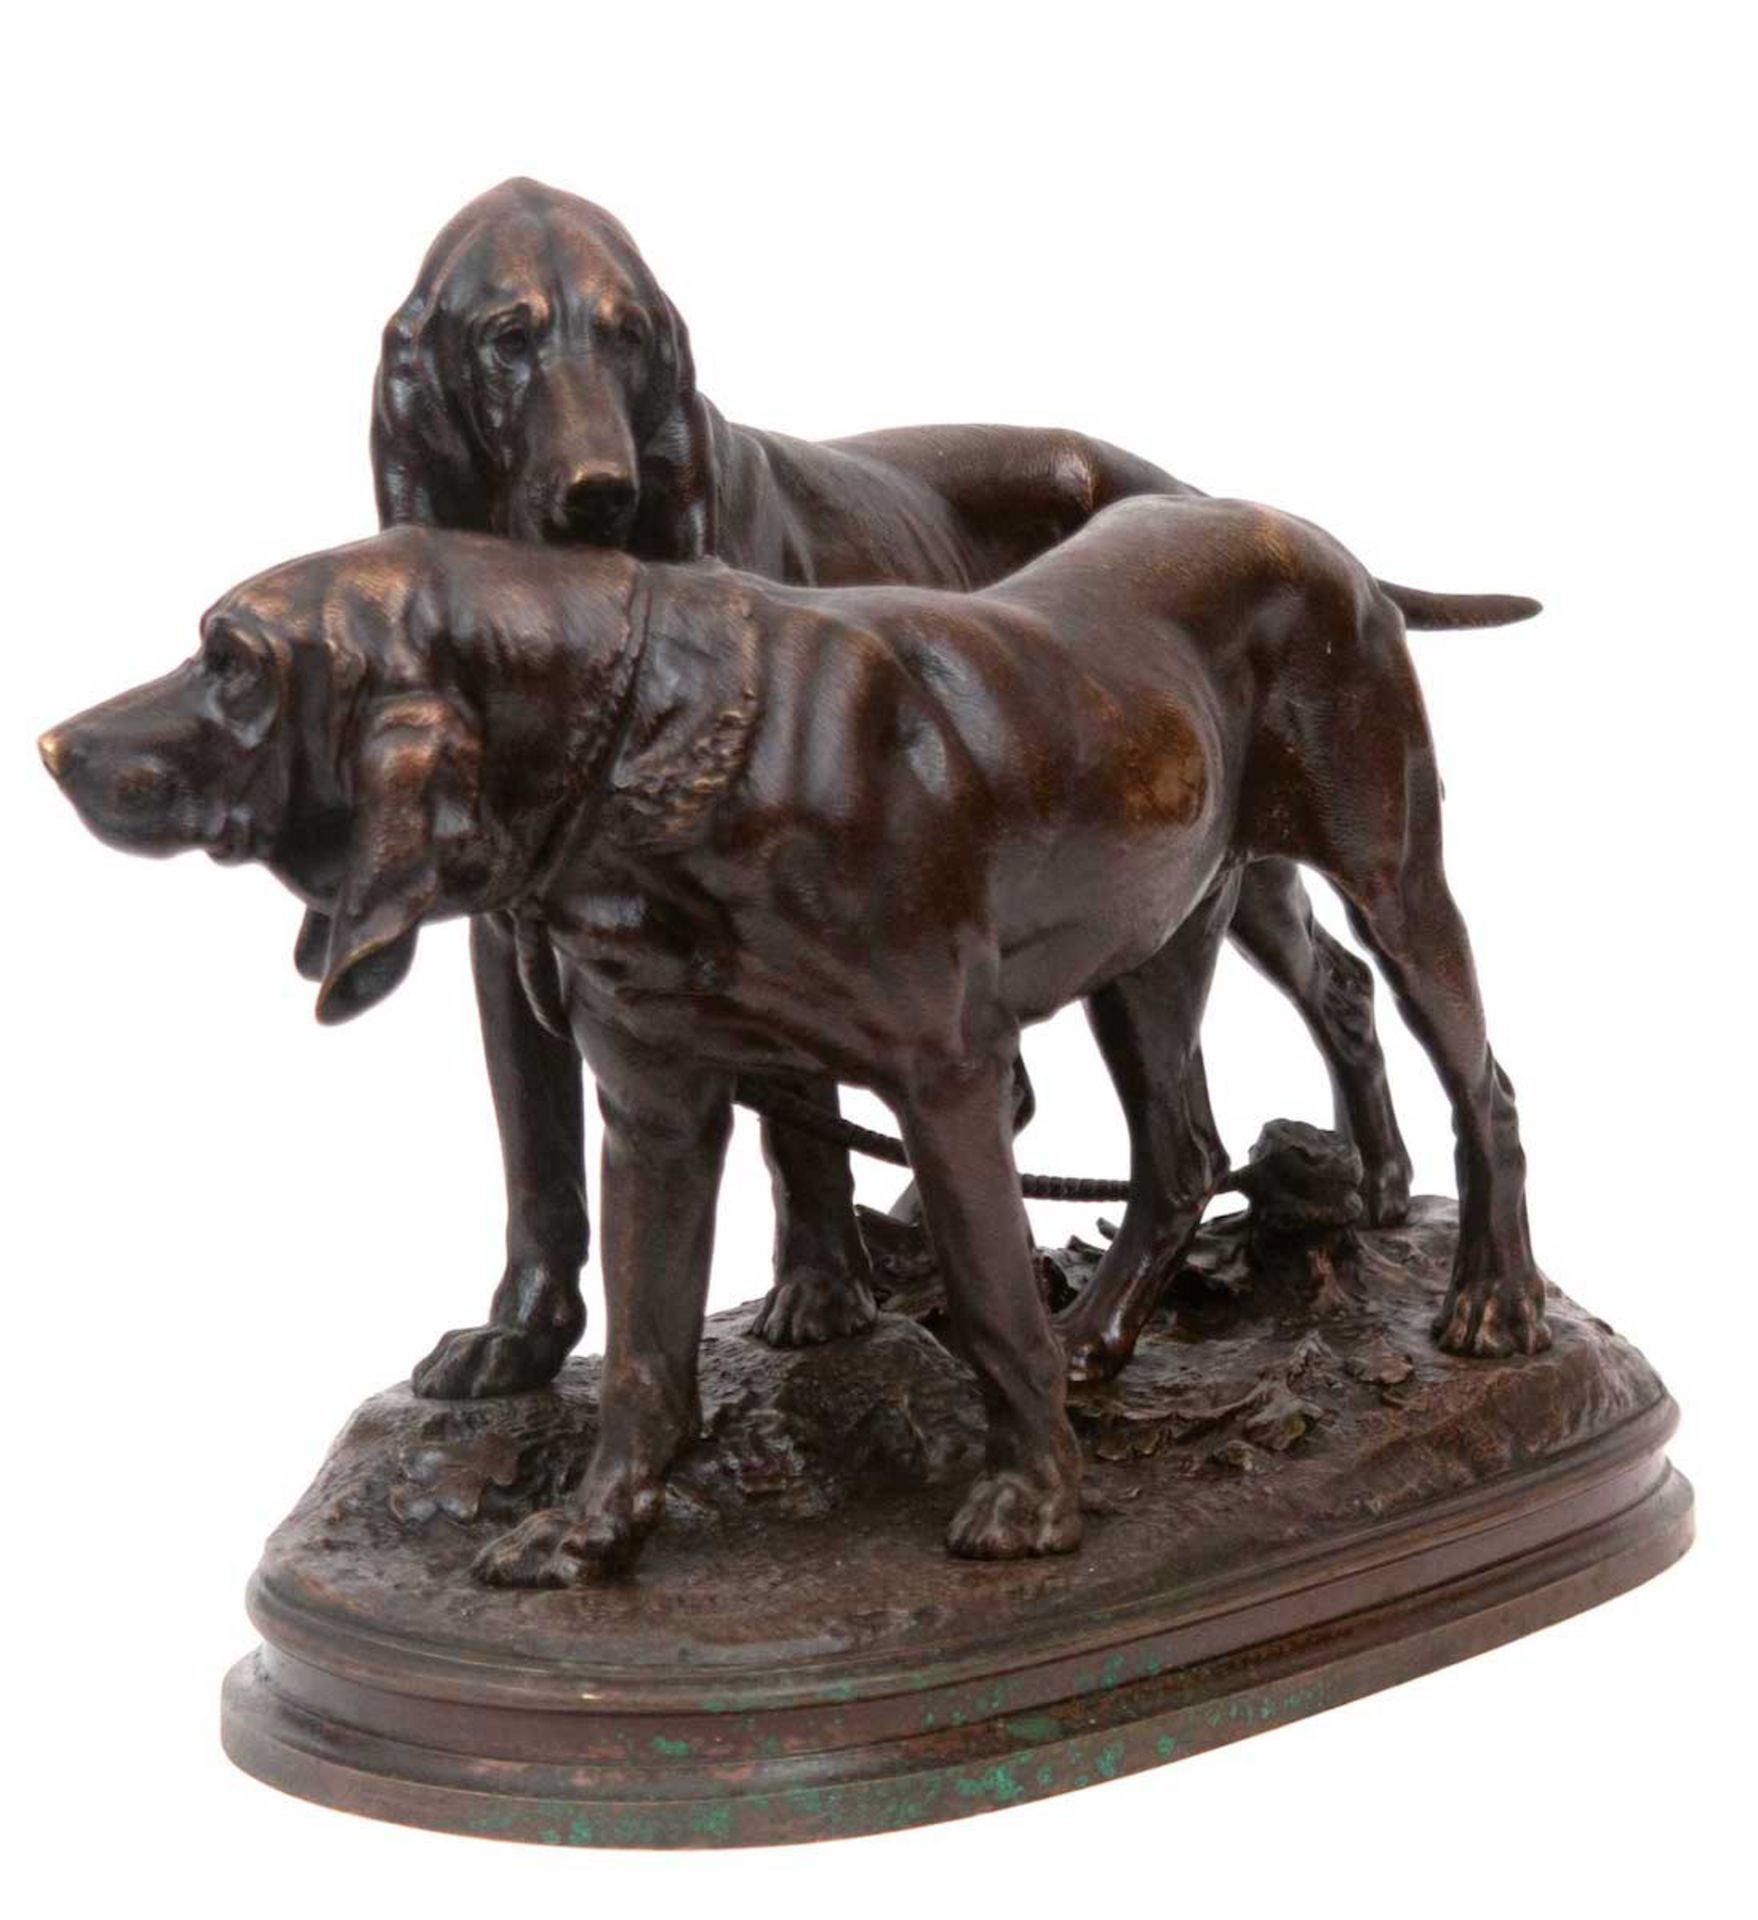 Lecourtier, Prosper (1855 Gremilly/Frankreich-1924 Paris) "Zwei Jagdhunde", Bronze, dunkel patinier